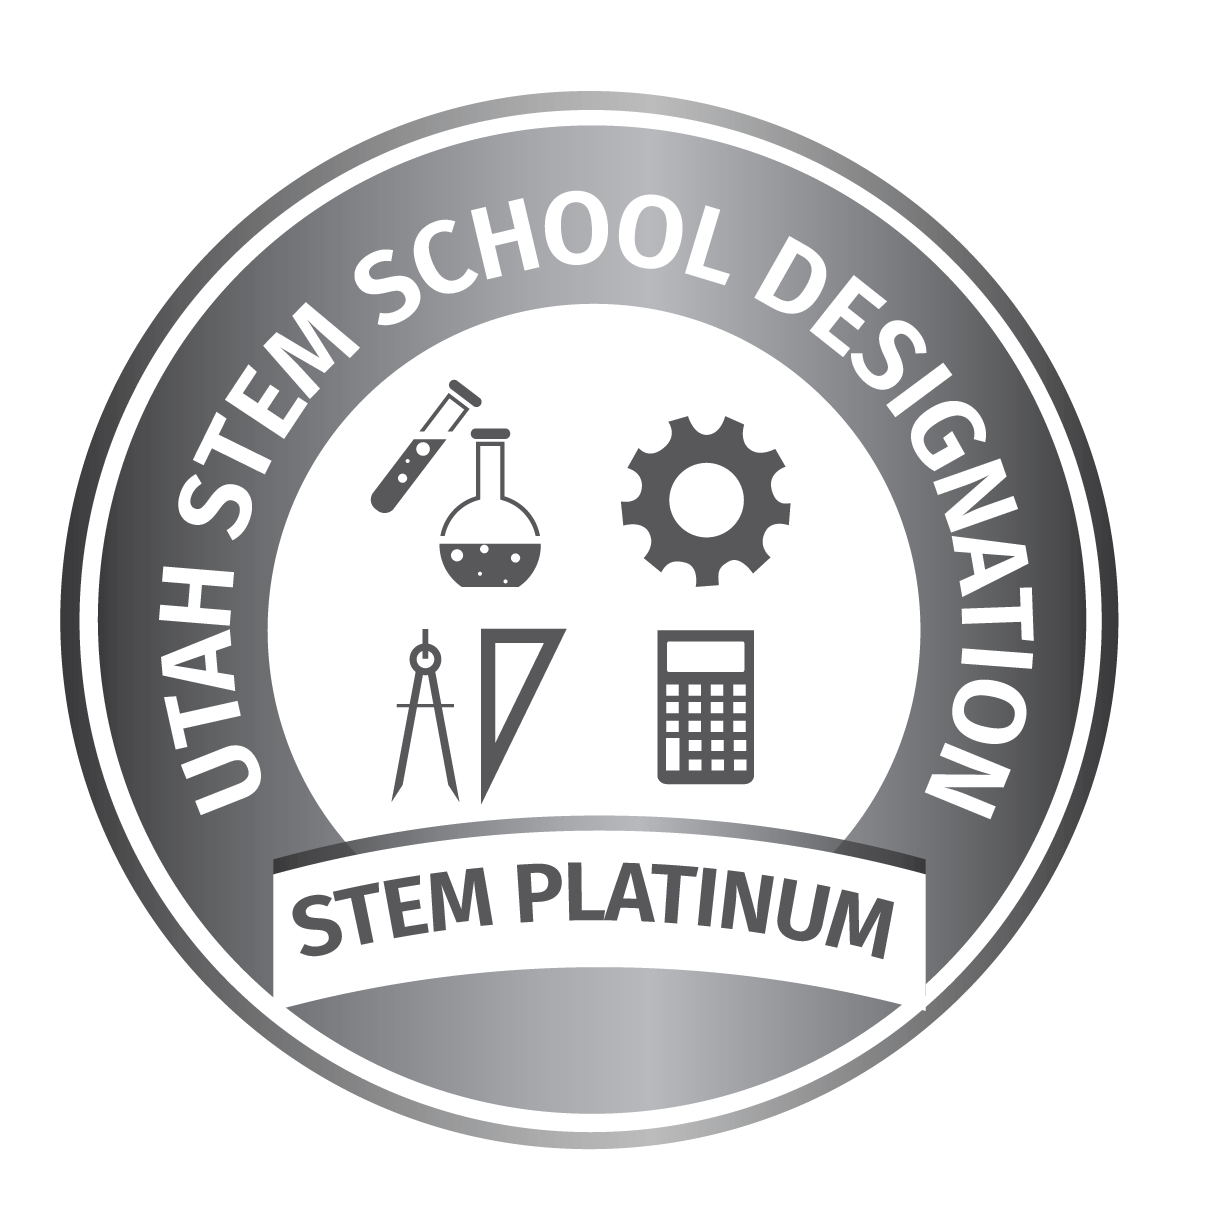 utah platinum stem school designation